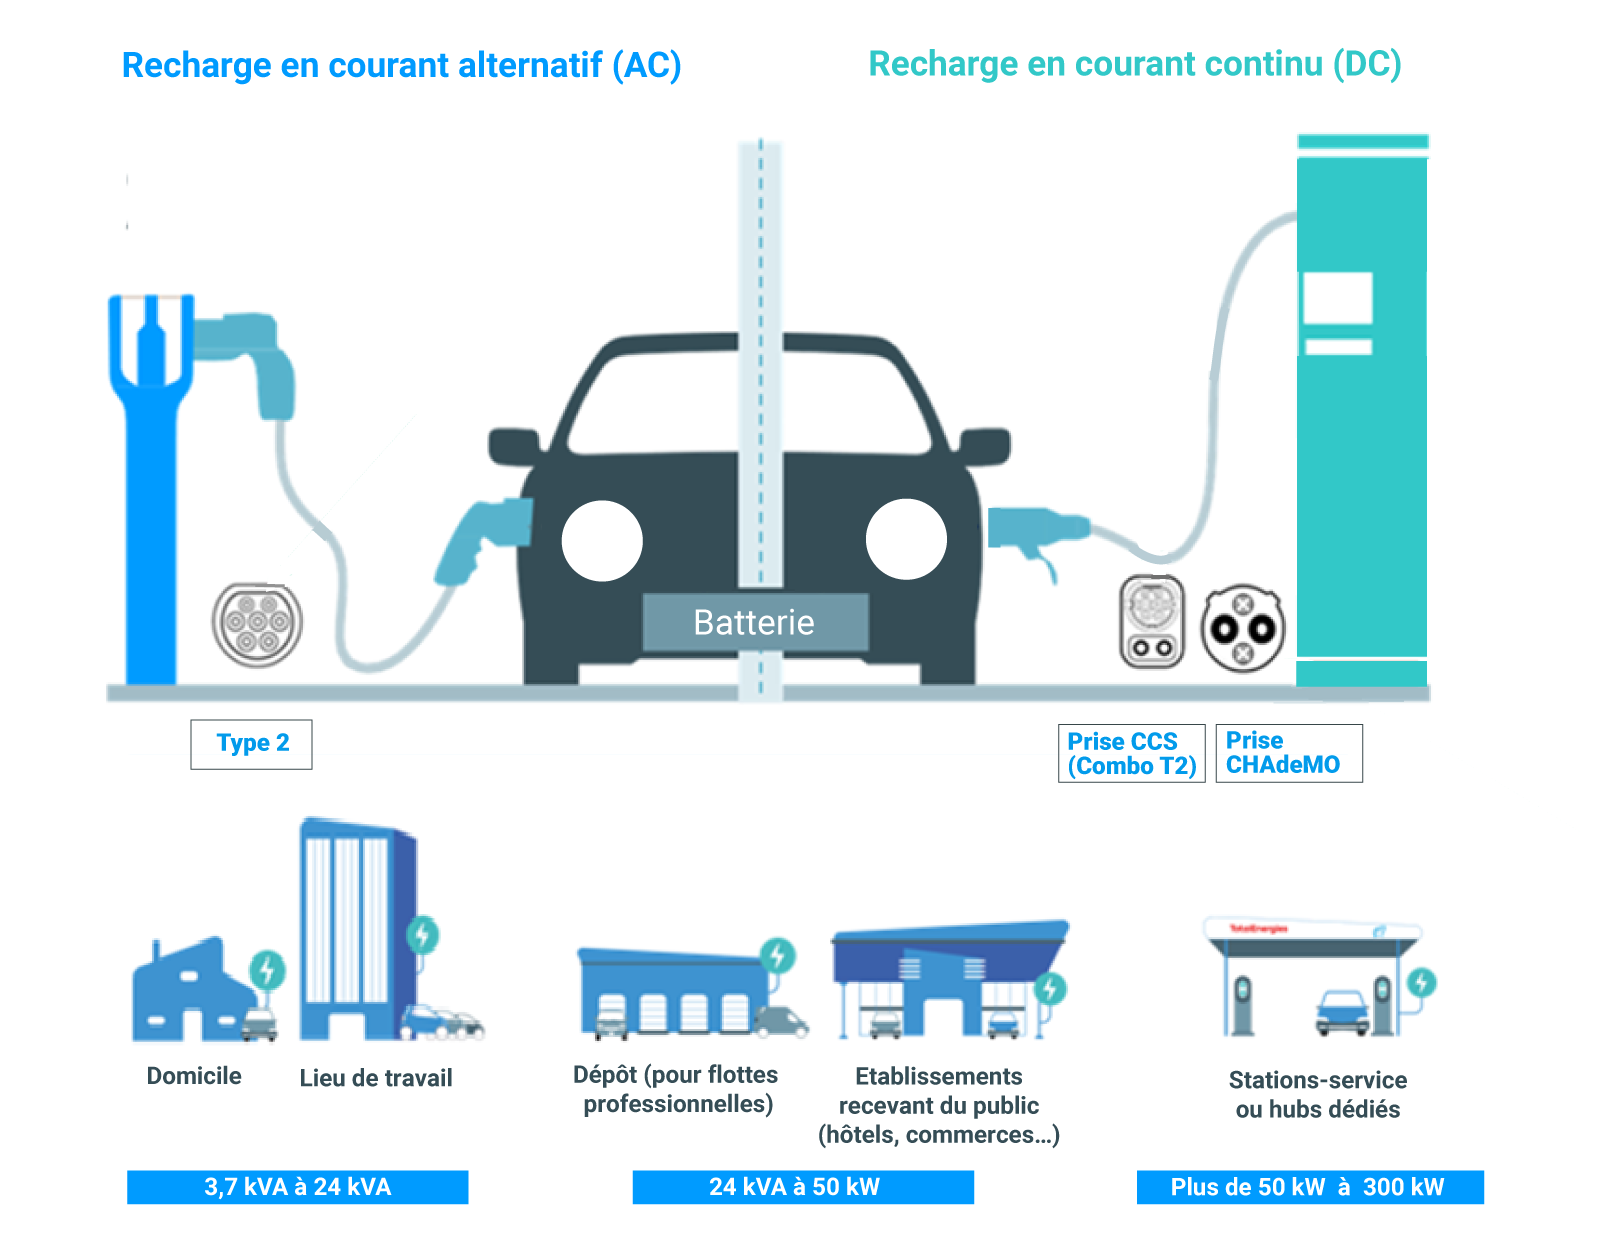 Recharger un véhicule électrique : comment ça marche ?